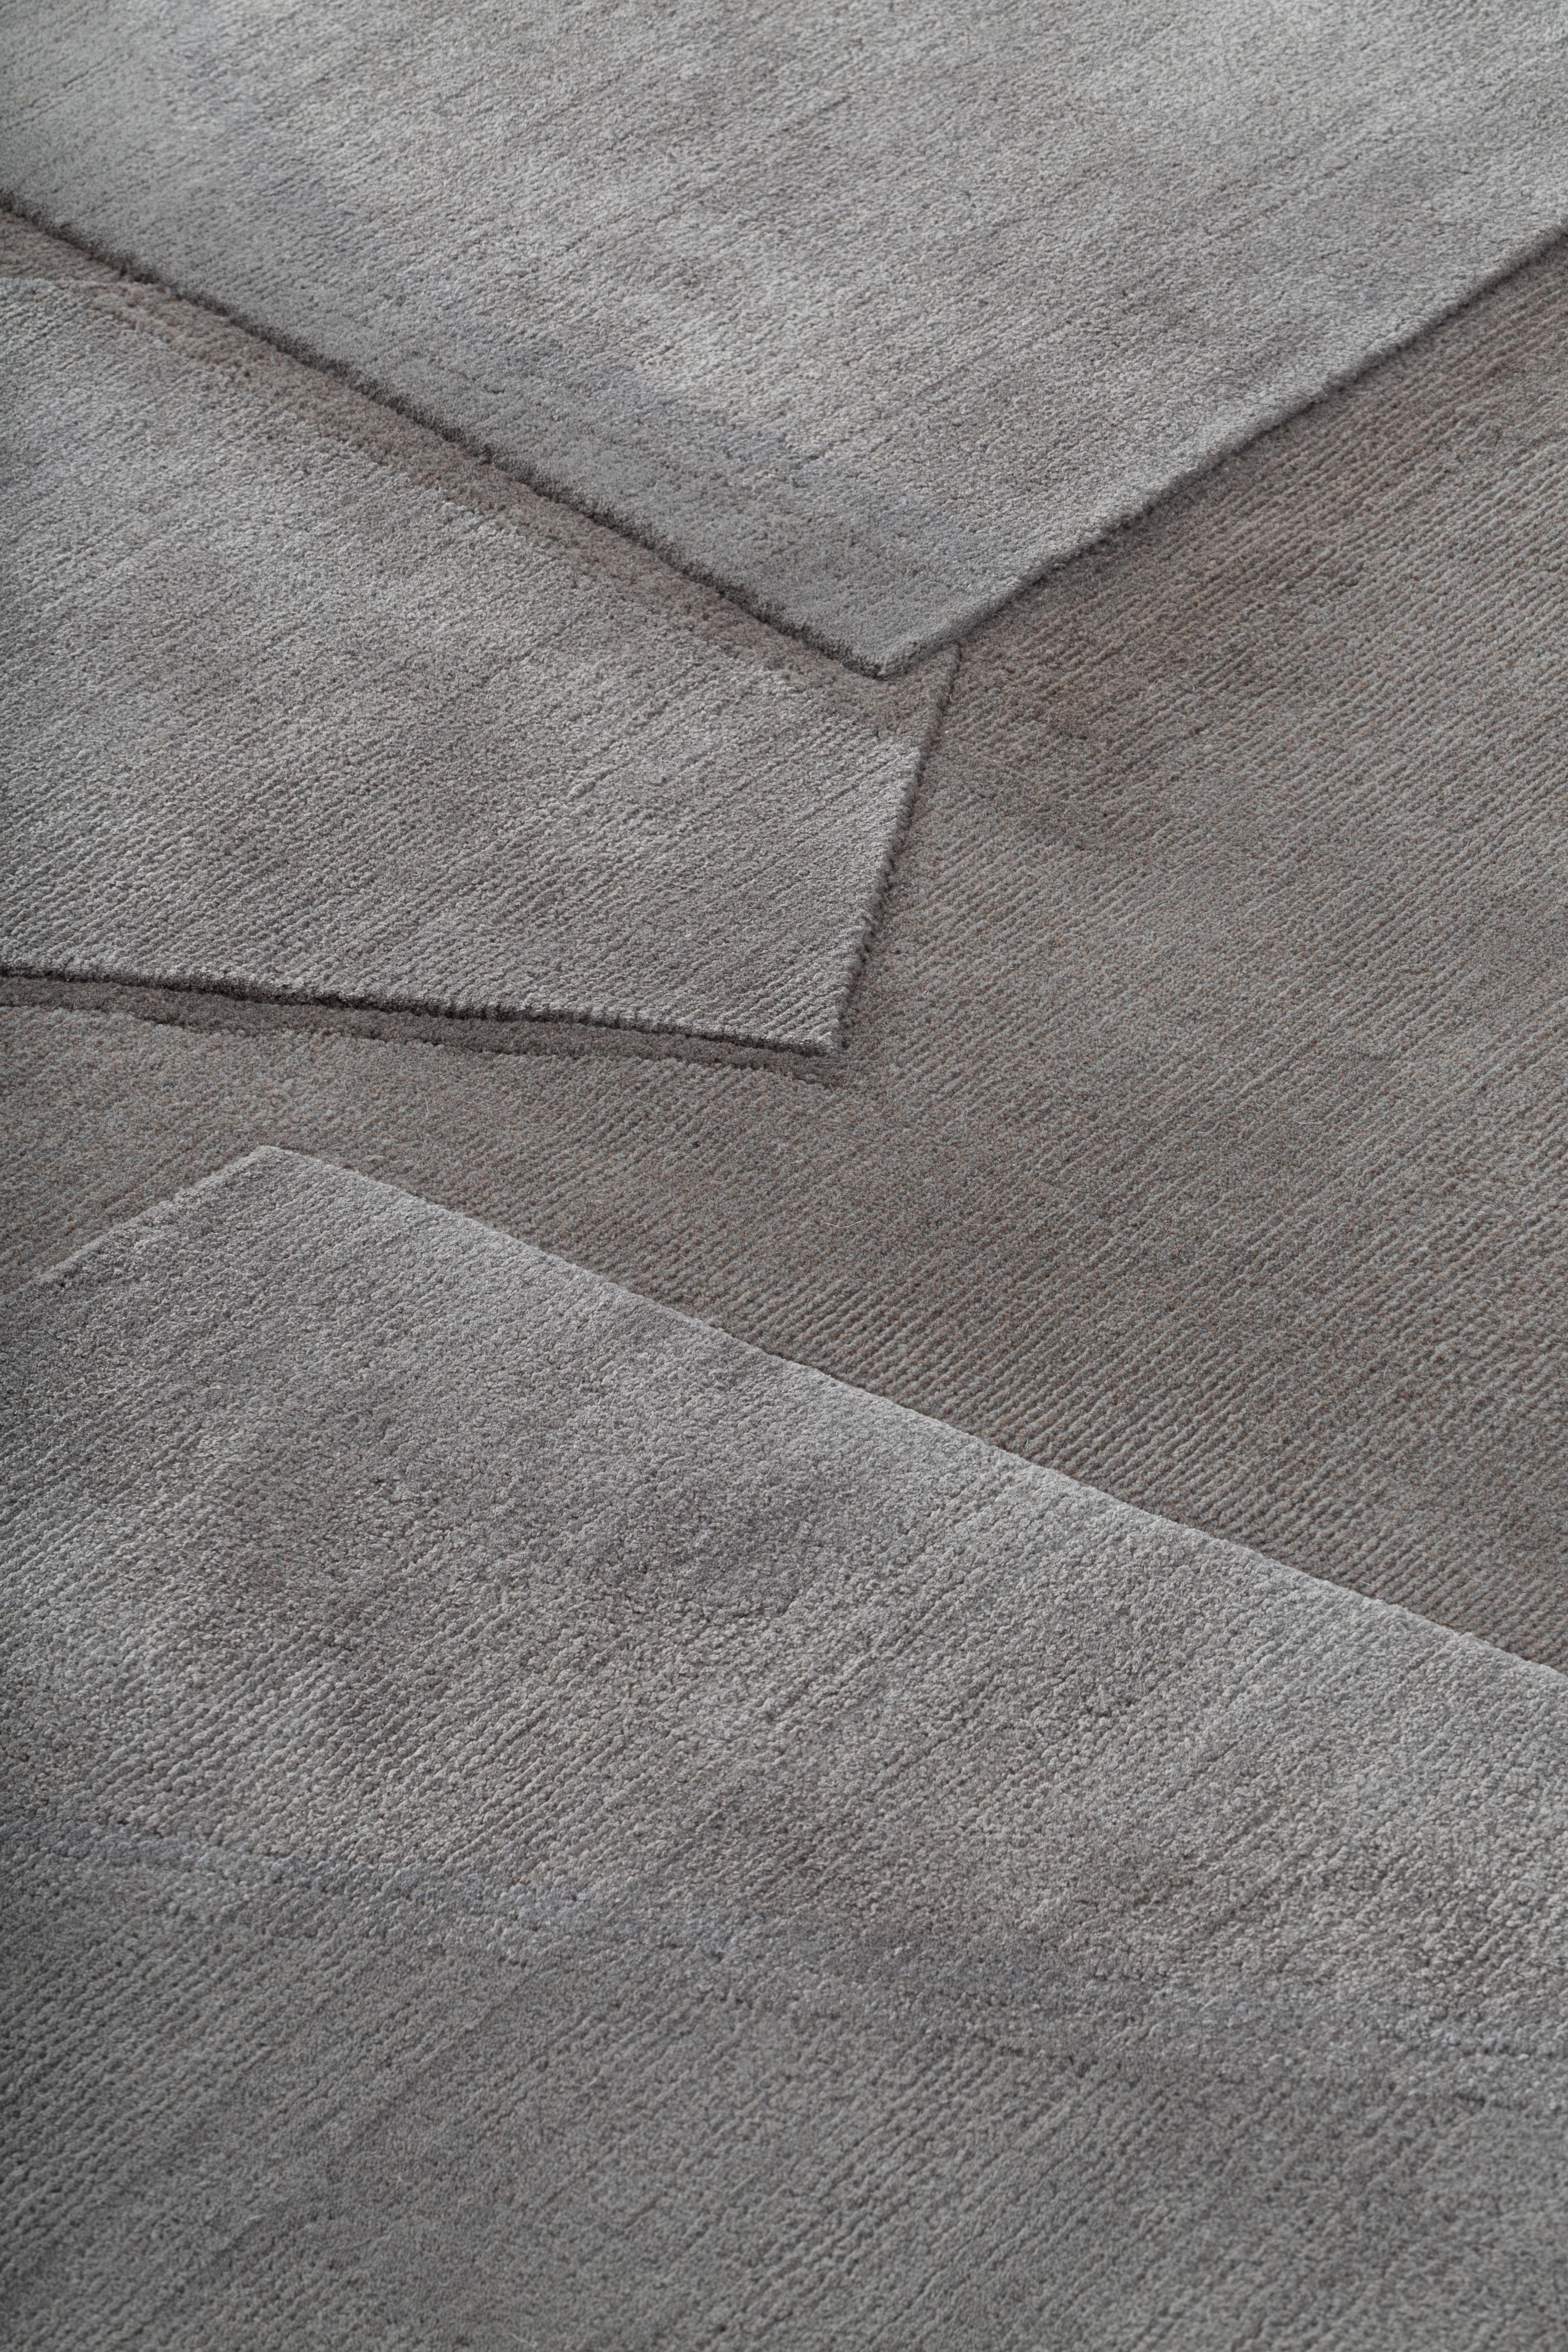 Handgeknüpft im cc-tapis-Atelier in Kathmandu, Nepal. Der Teppich ist aus Seide, Himalaya-Wolle und Baumwolle aus der Umgebung des Ateliers gewebt. Erstellt mit einer speziellen Technik, die ausschließlich von cc-tapis verwendet wird. 
125.00